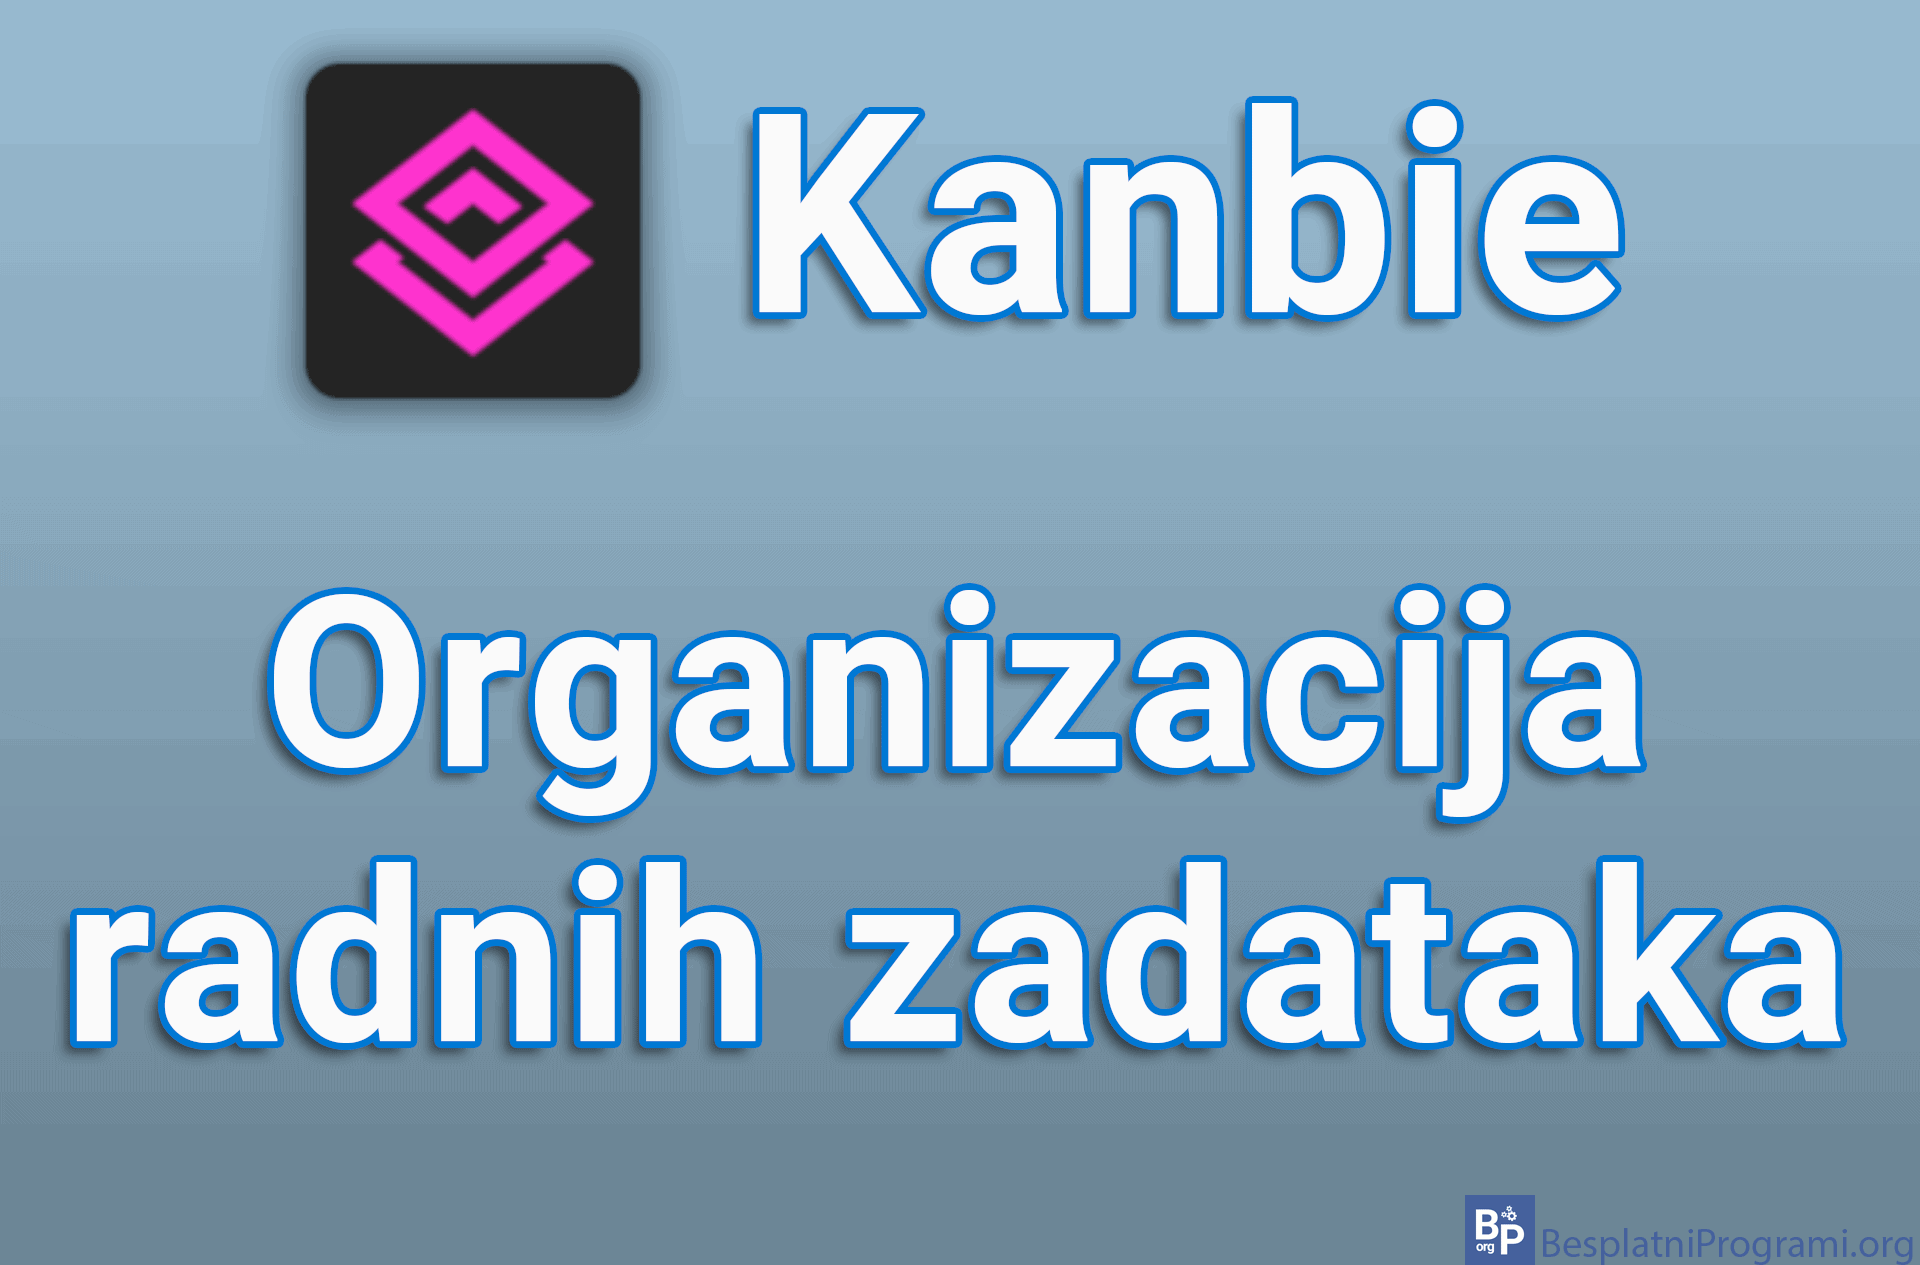 Kanbie - Organizacija radnih zadataka